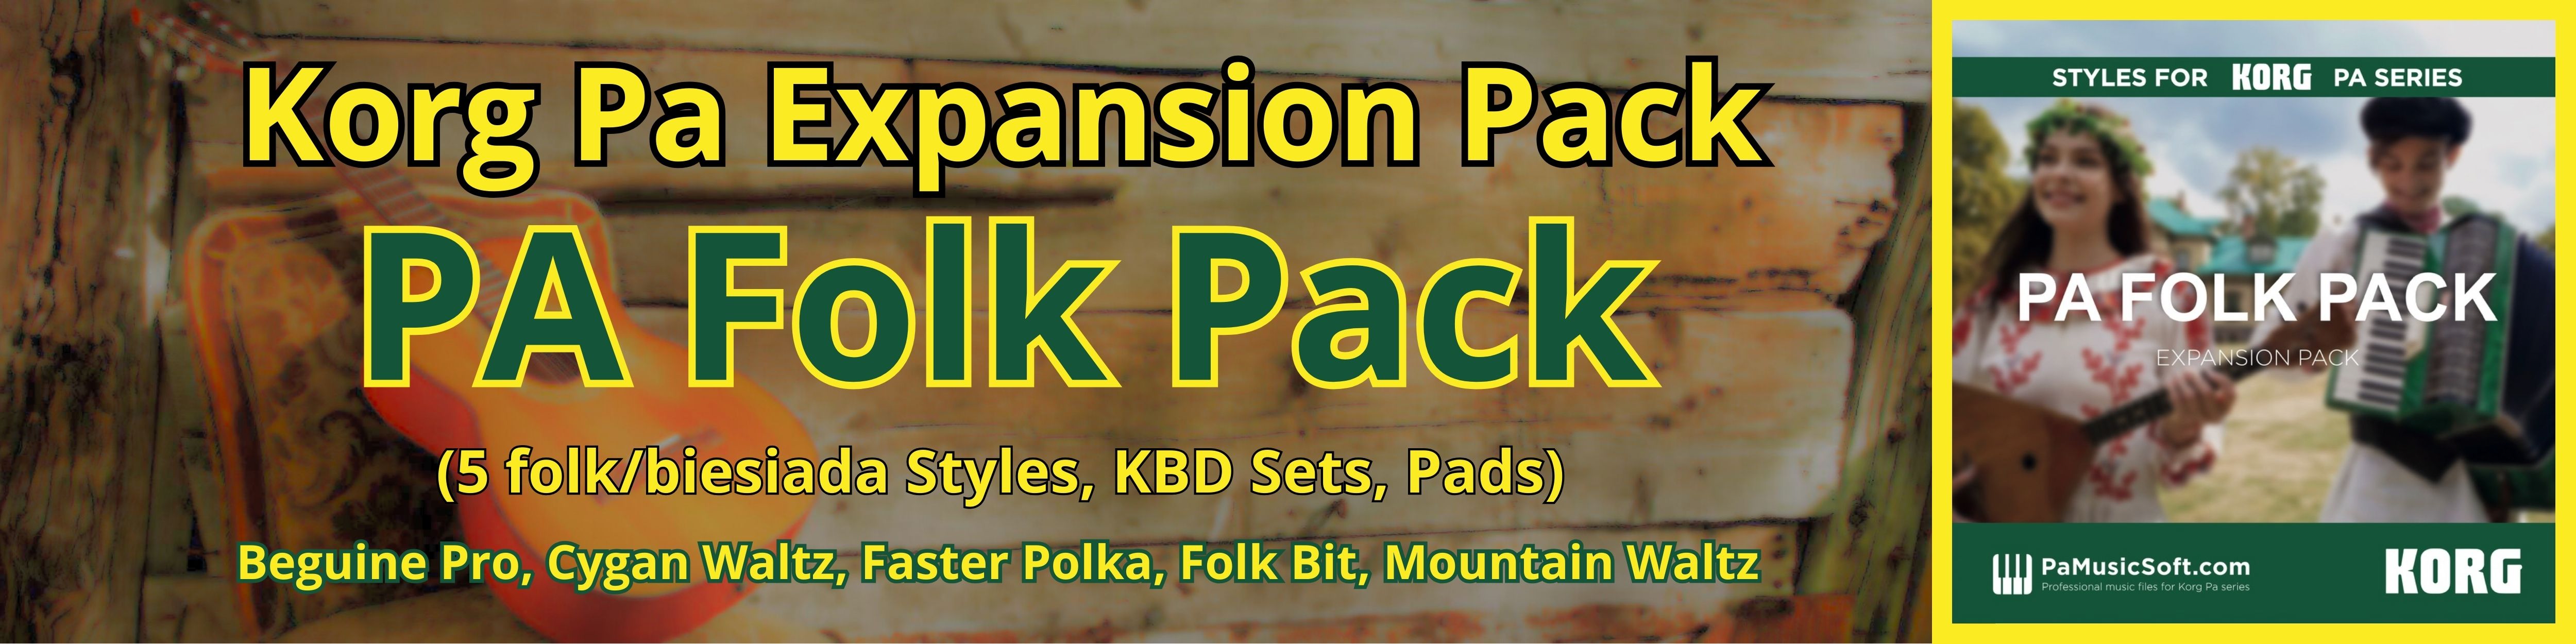 Pa_Folk_Pack_Banner